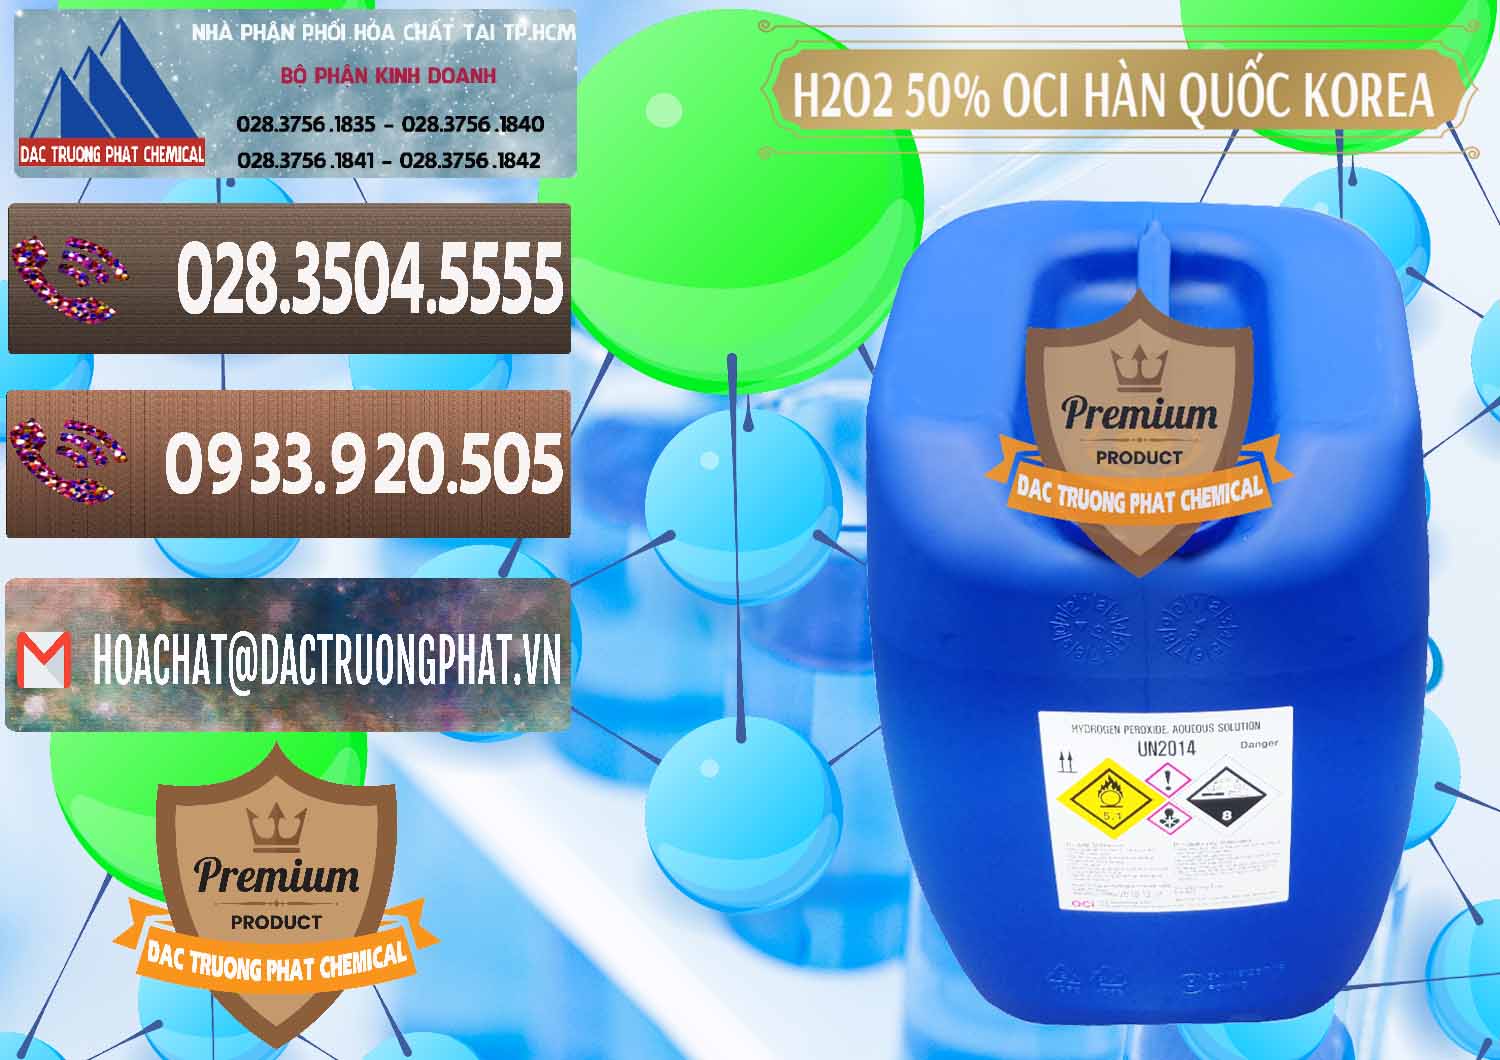 Đơn vị chuyên kinh doanh - bán H2O2 - Hydrogen Peroxide 50% OCI Hàn Quốc Korea - 0075 - Chuyên cung cấp ( bán ) hóa chất tại TP.HCM - hoachatviet.net